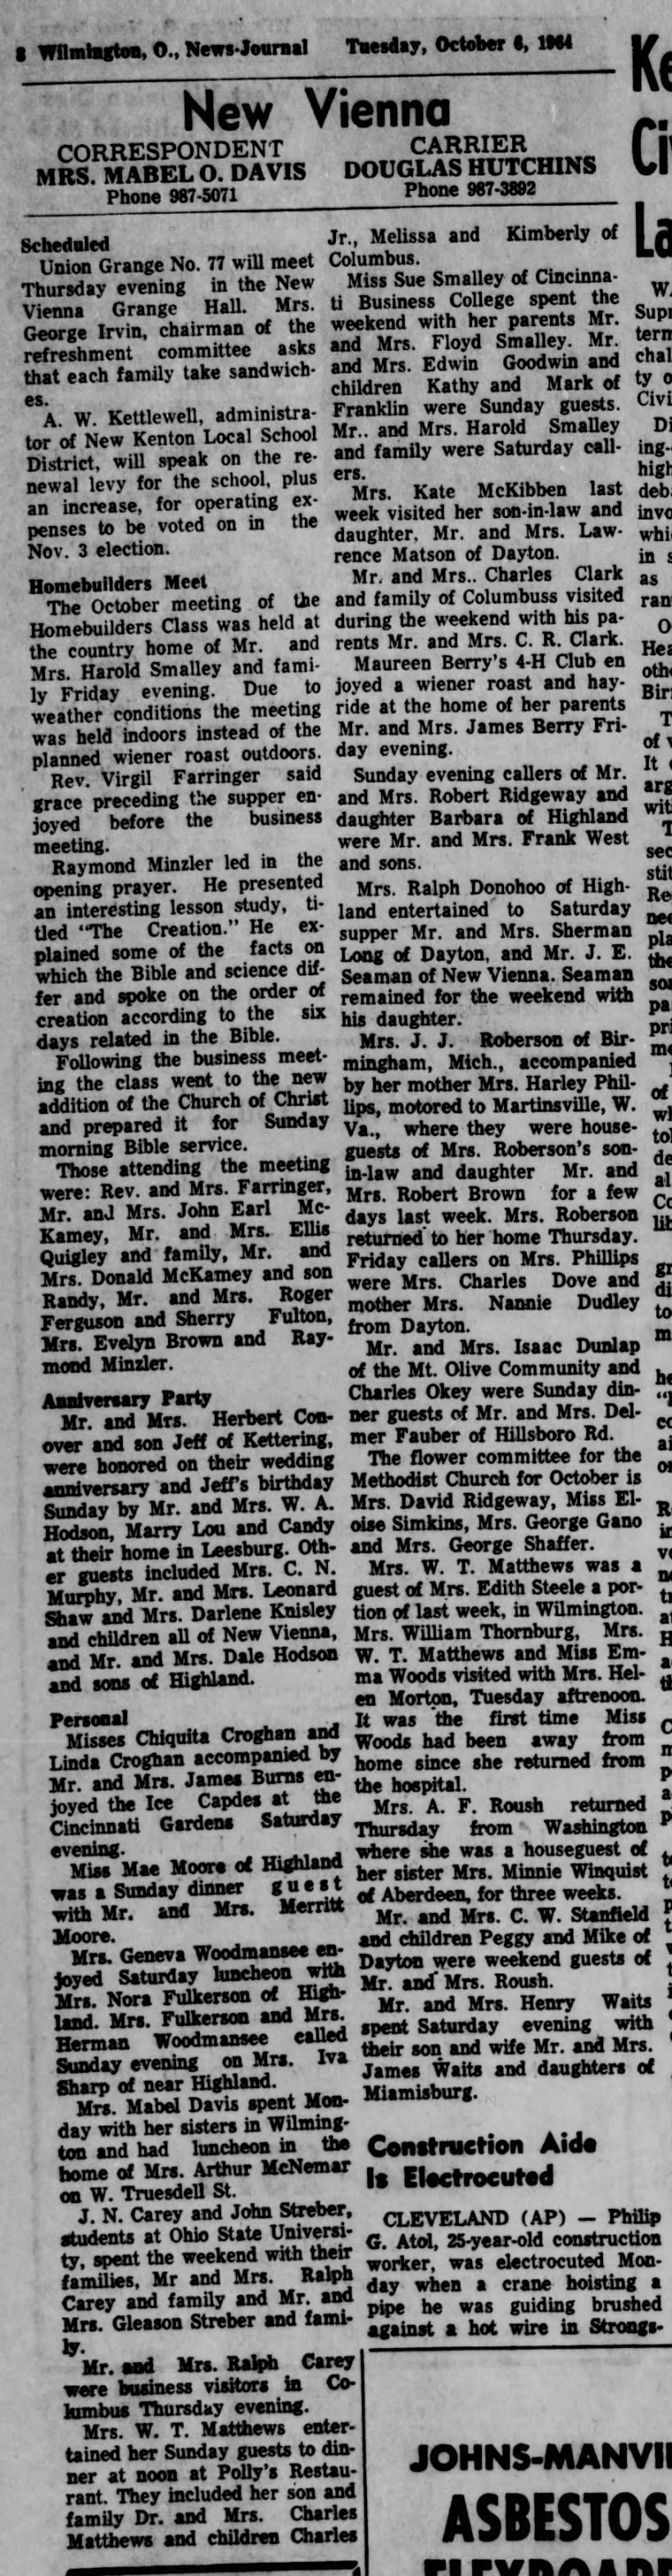 1964 New Vienna (Ohio) News -Oct. 6